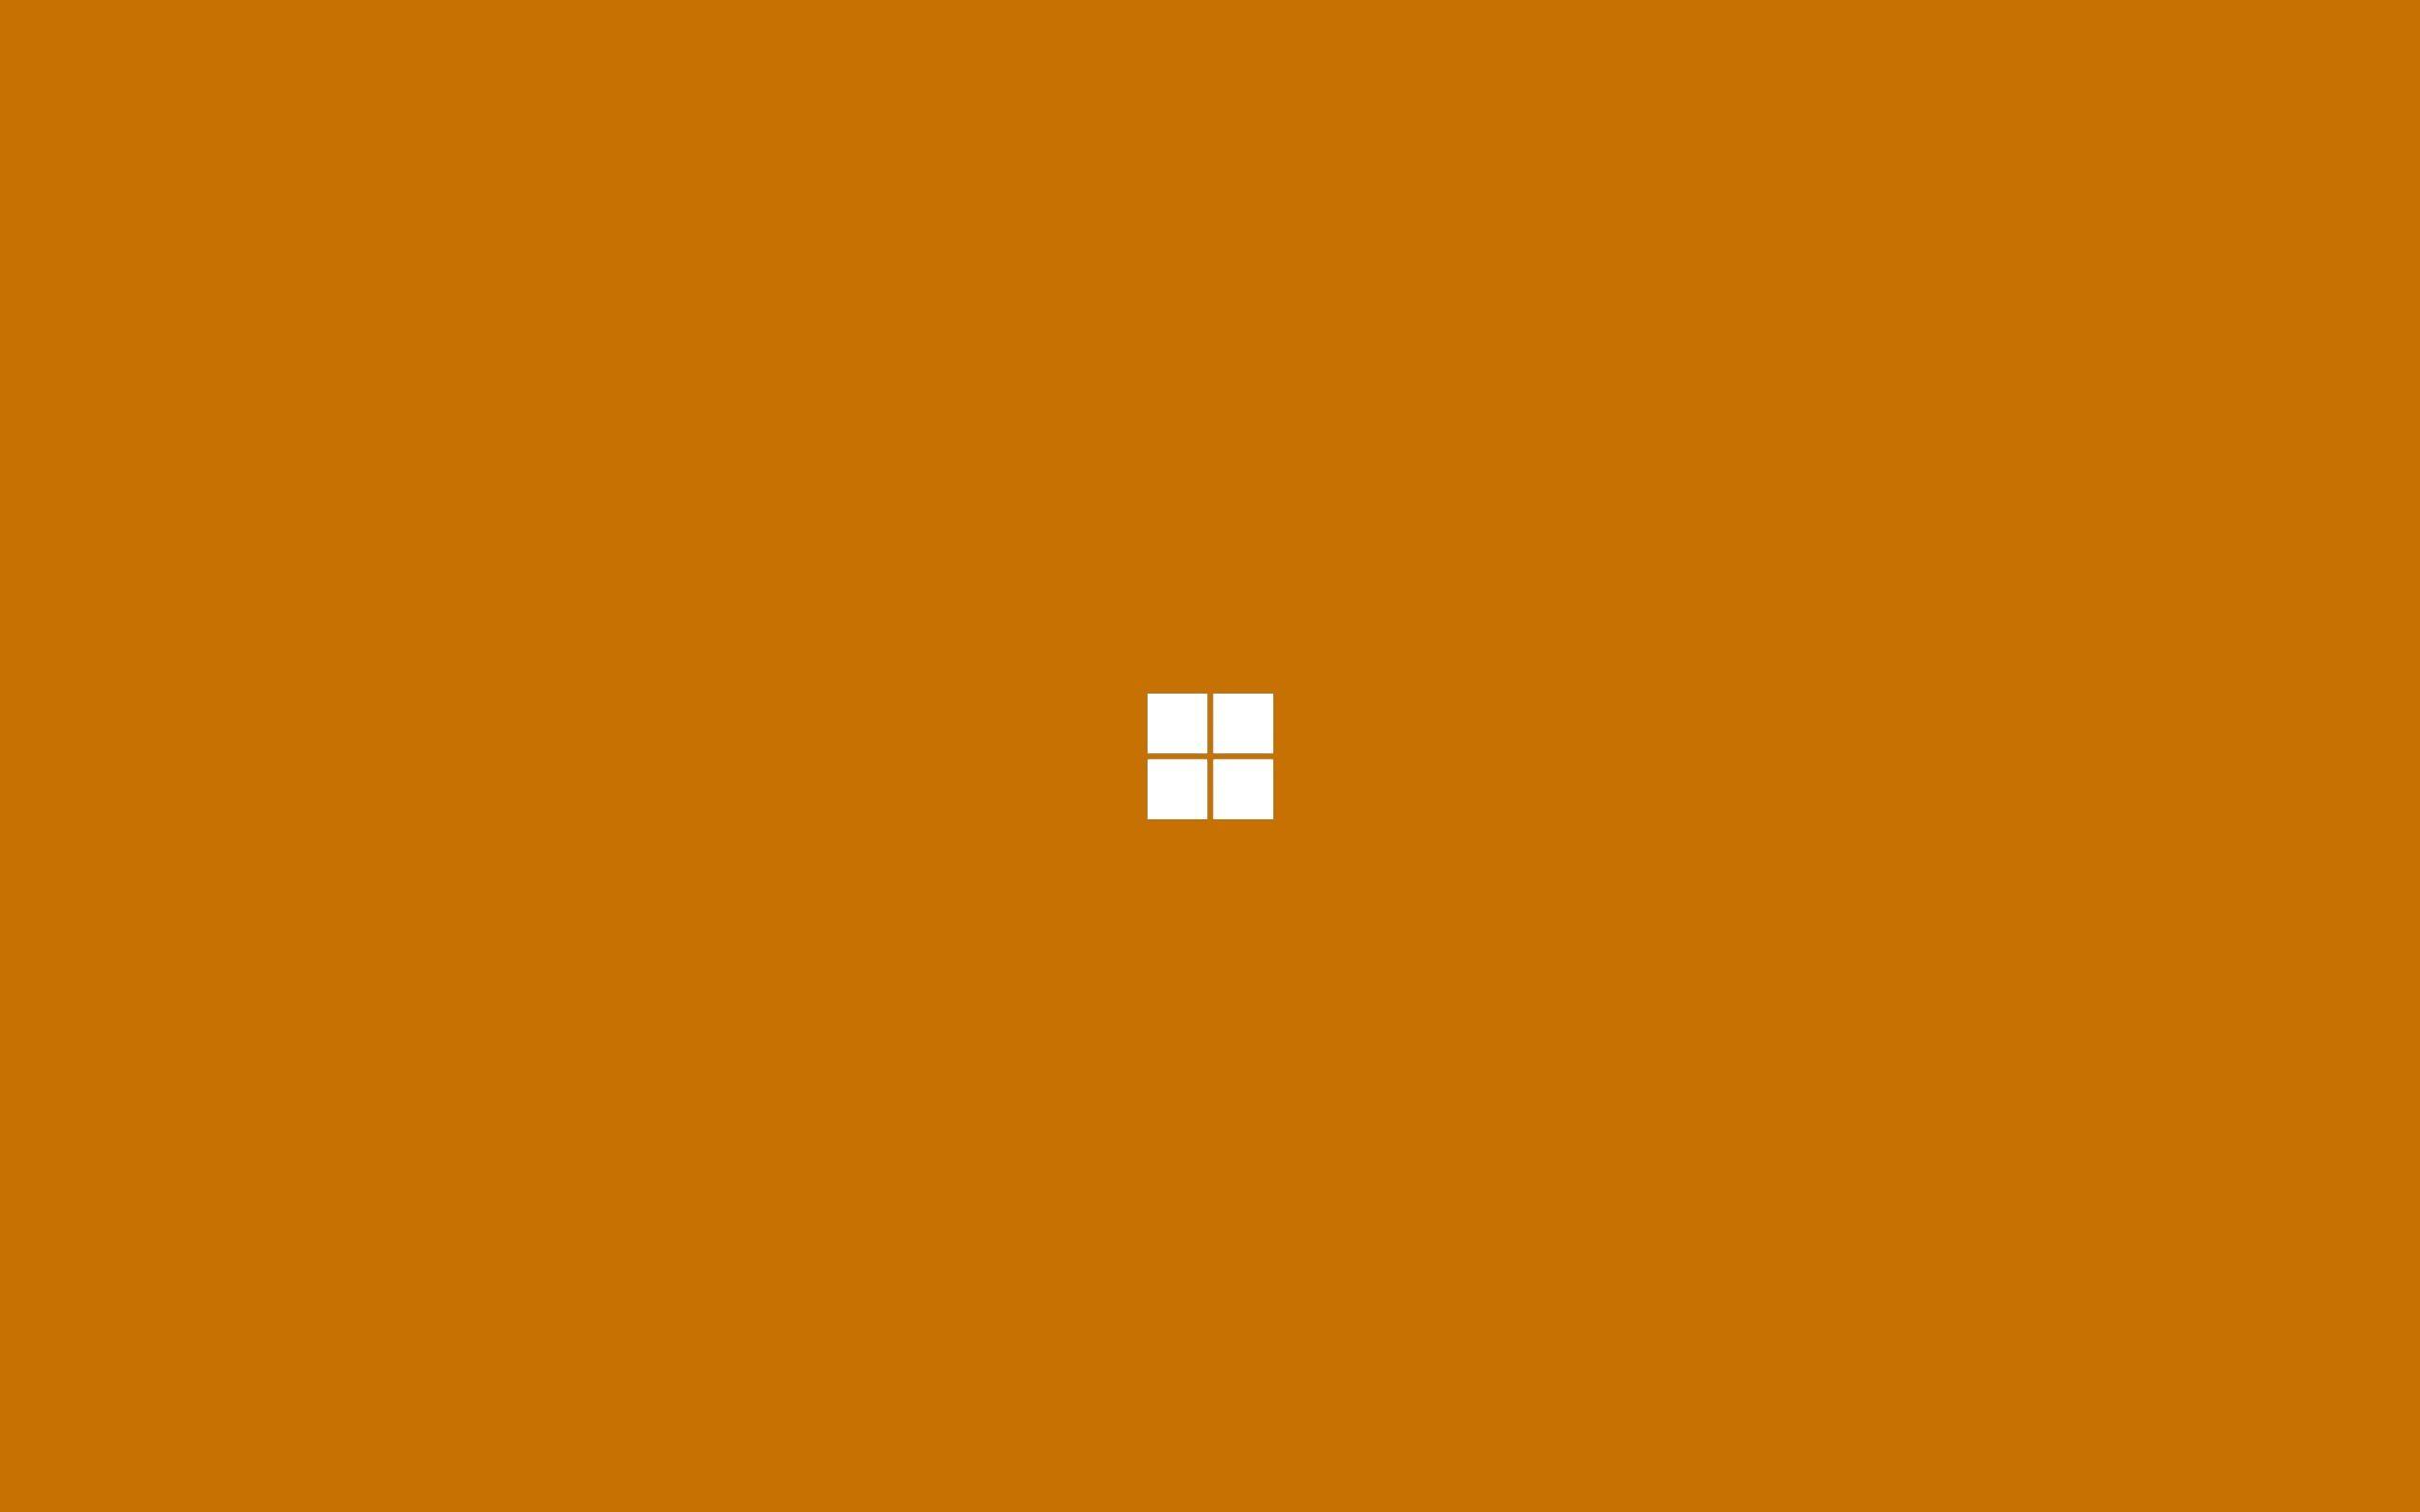 Orange Circle Computer Logo - Wallpaper : simple background, minimalism, text, logo, yellow